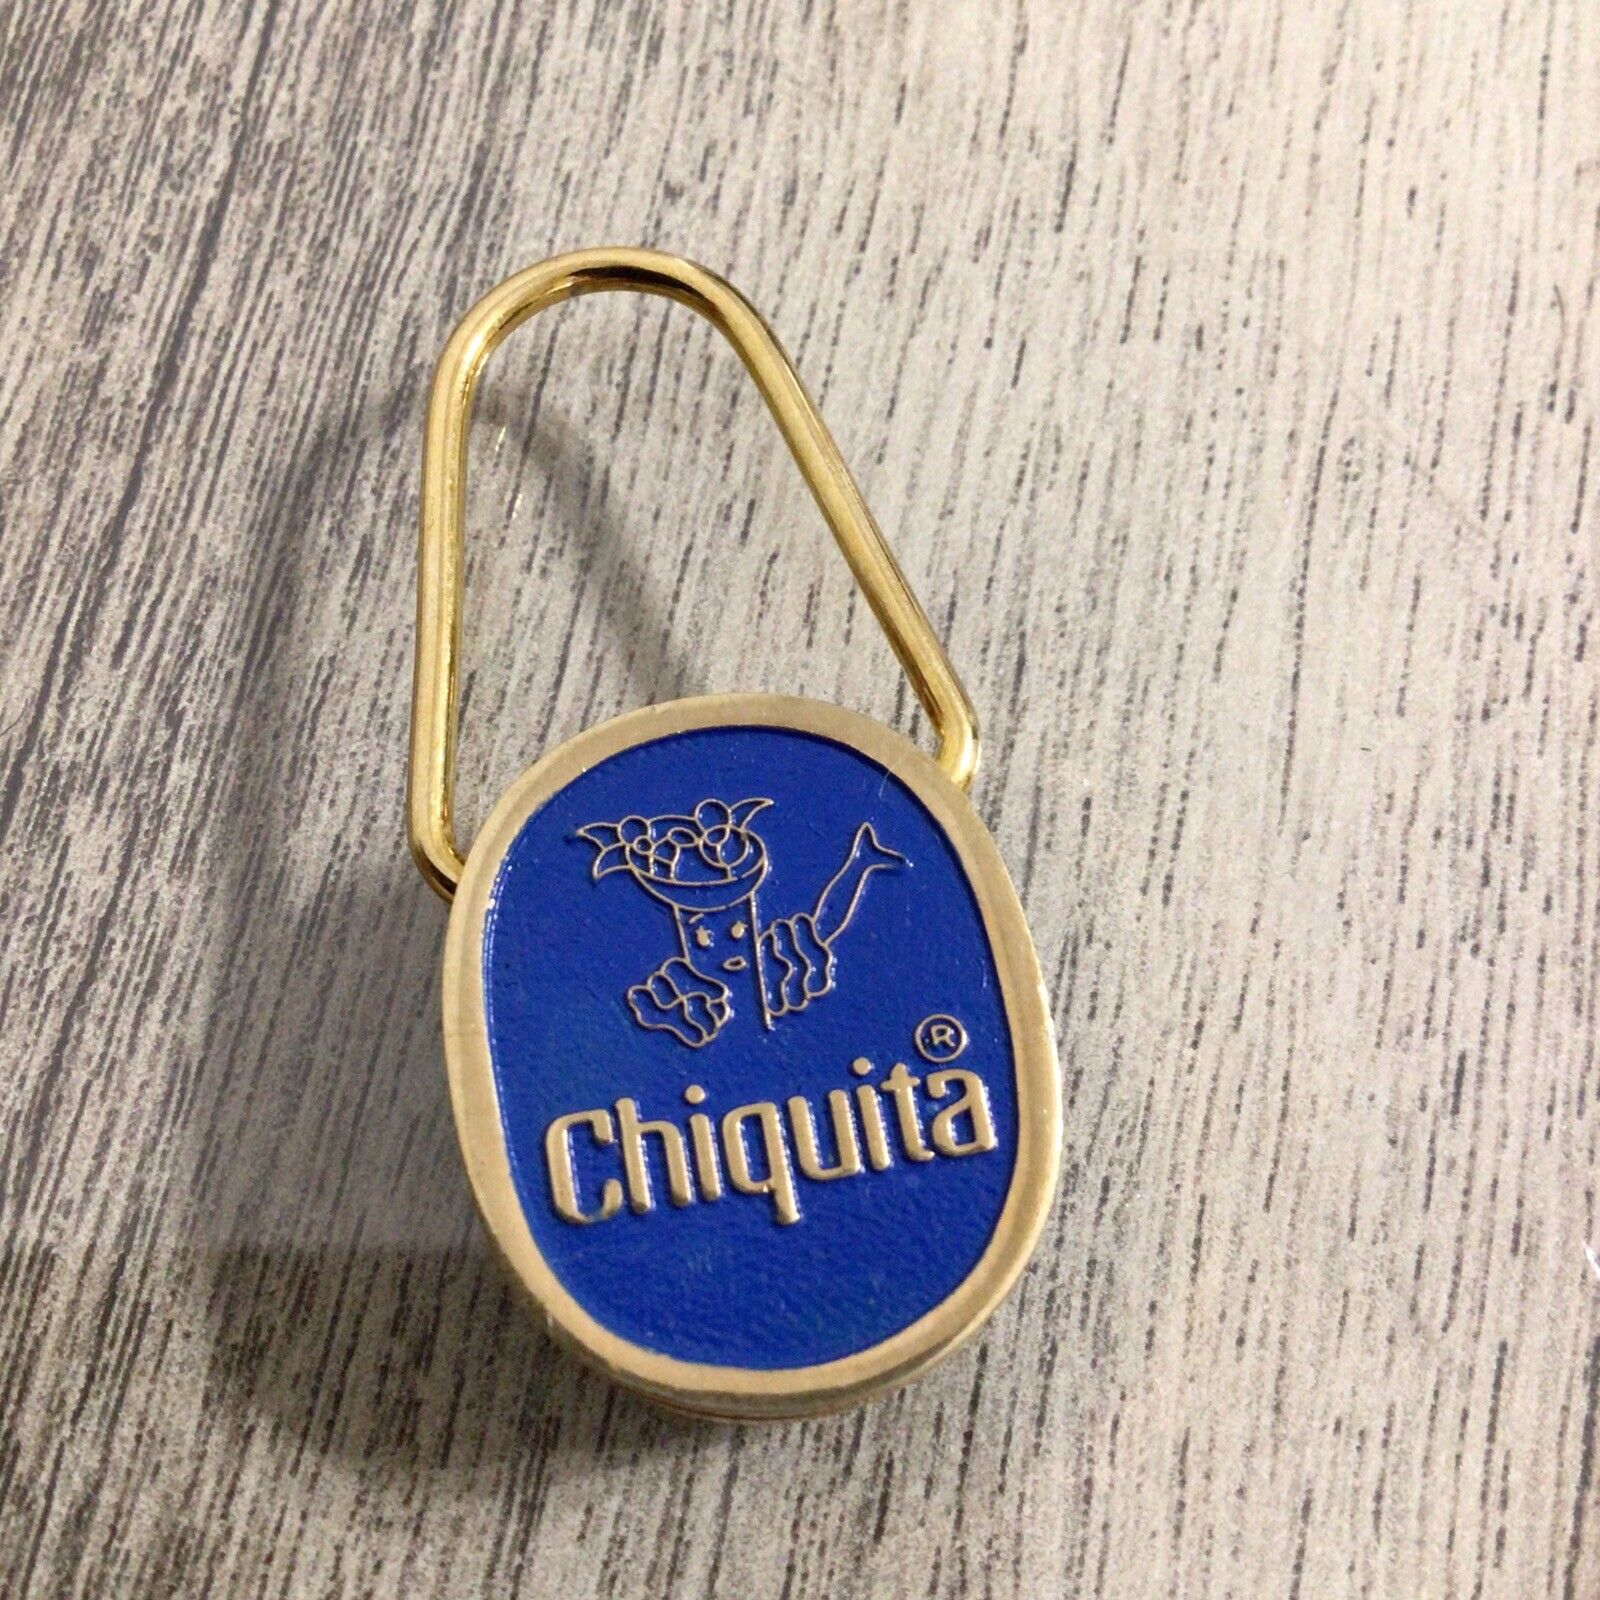 Vintage Chiquita Banana Metal Keychain Key Ring Advertising